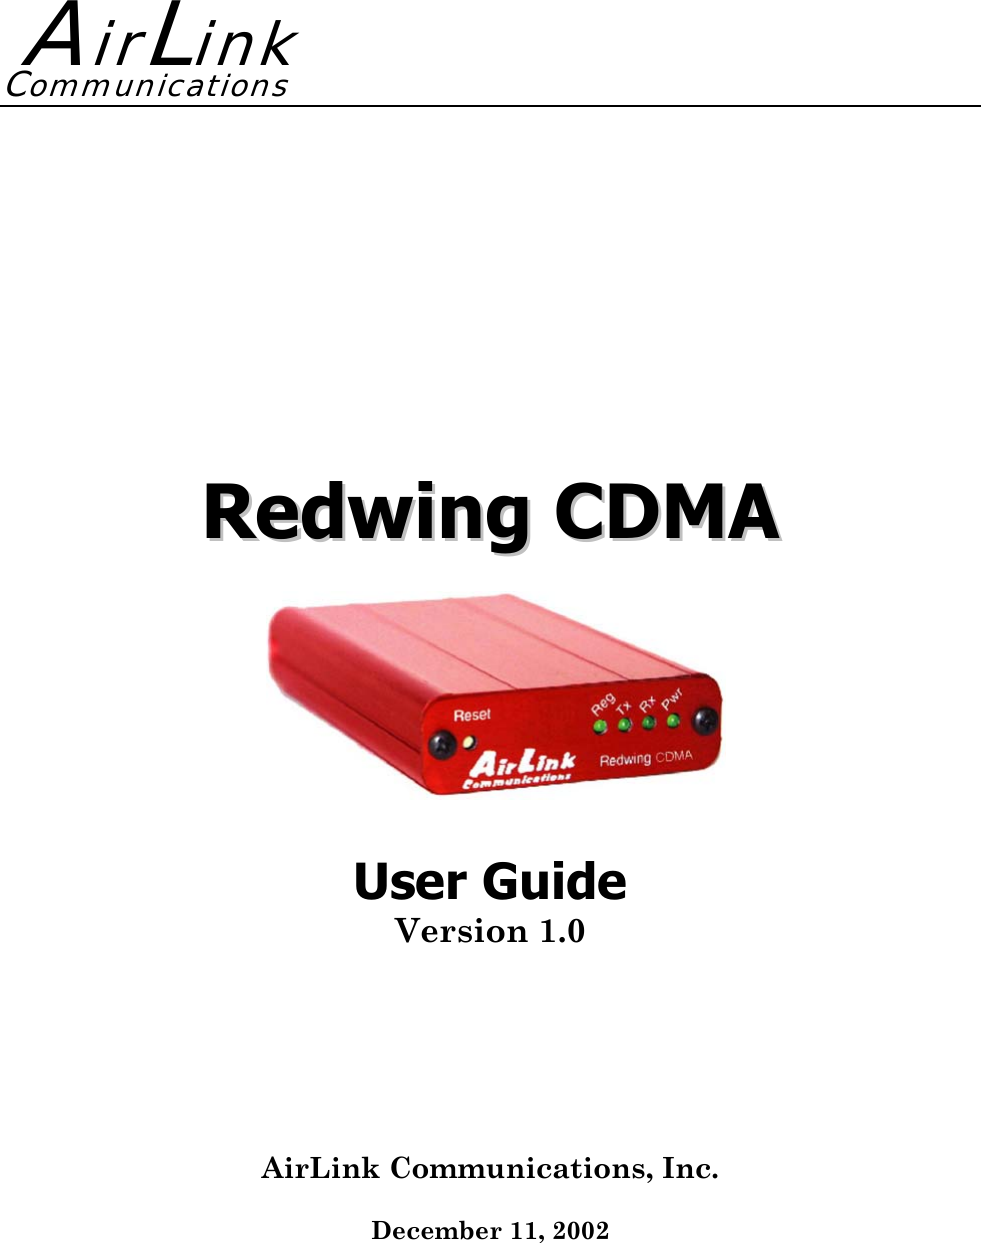     RReeddwwiinngg  CCDDMMAA     User Guide Version 1.0  AirLink Communications, Inc.  December 11, 2002   AirLinkCommunications